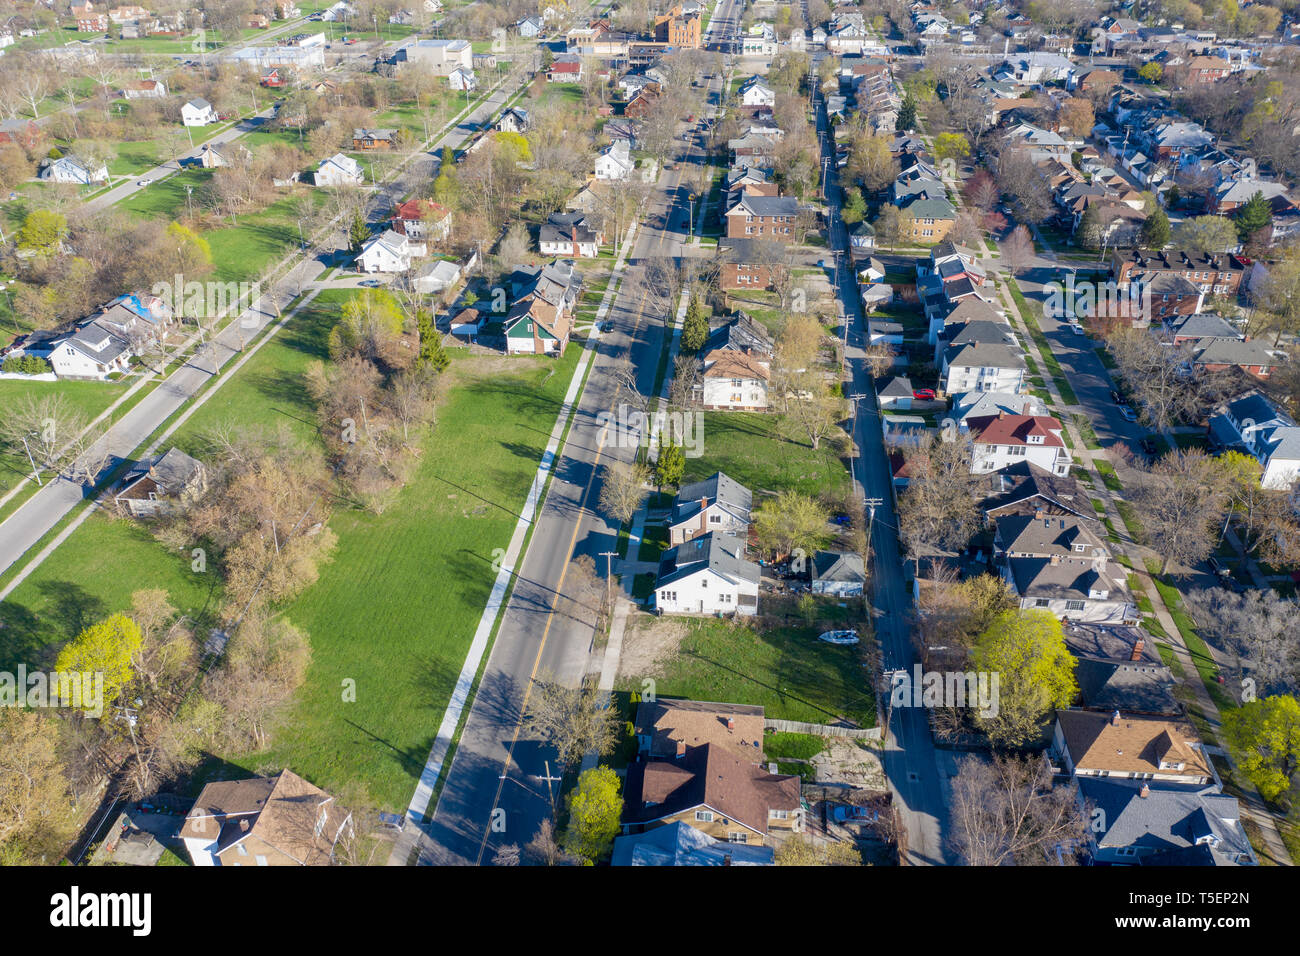 Detroit, Michigan - Große Abschnitte des freien Landes in Detroit (links) sind nicht in den wohlhabenden Vorort von Grosse Pointe Park gesehen. (Die Trennlinie läuft d Stockfoto